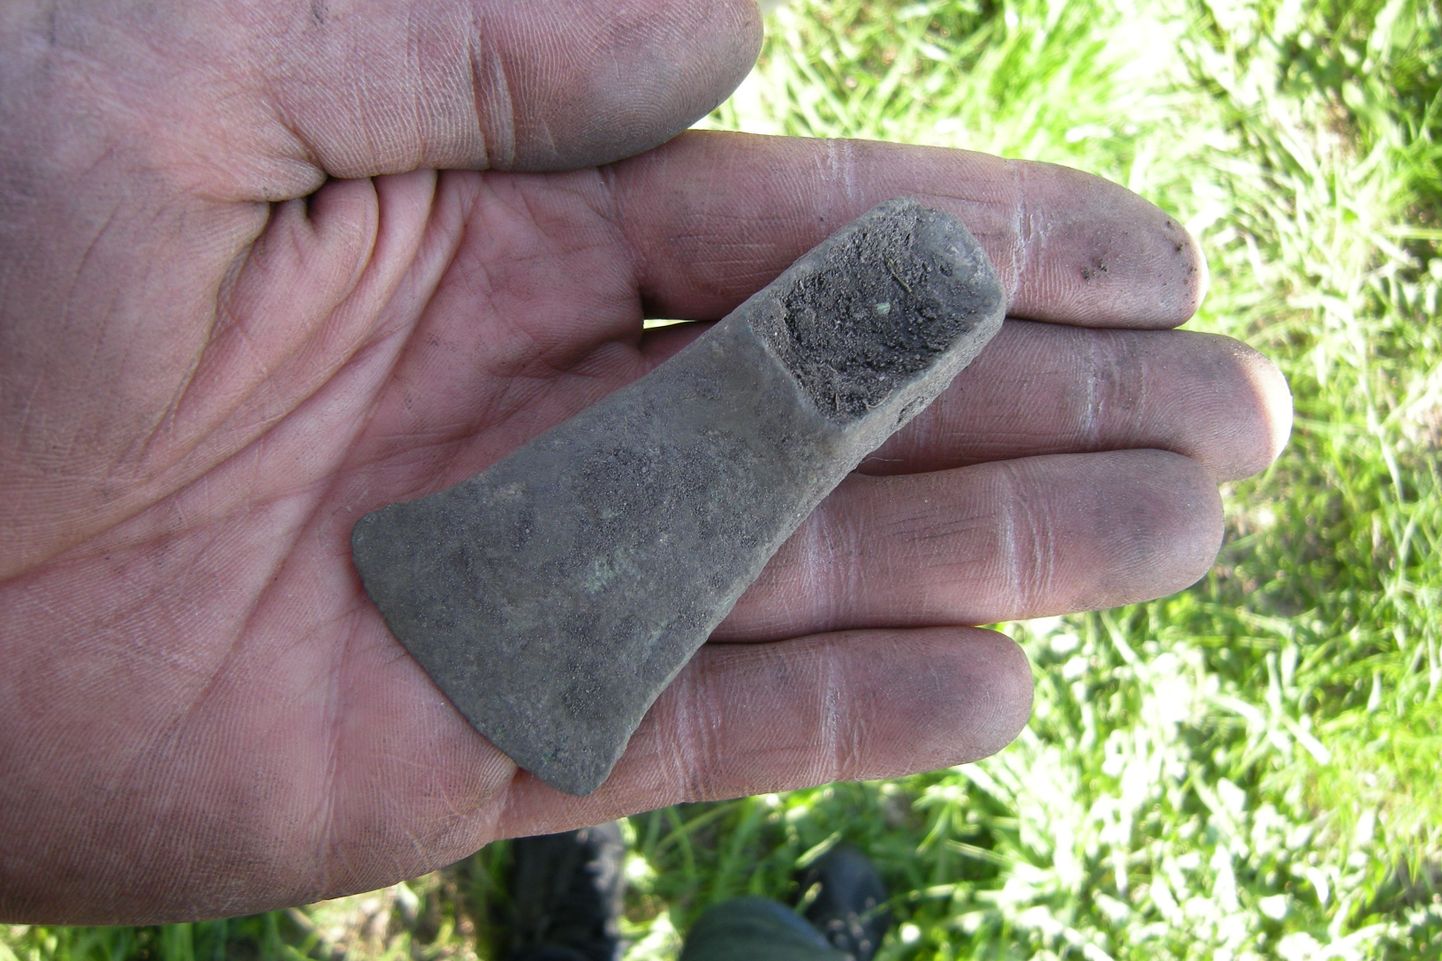 Sellise väikese kirve leidis Eesti Detektoristide Klubi liige Kaarel Tamm Jõgevamaalt Põltsamaa vallast.